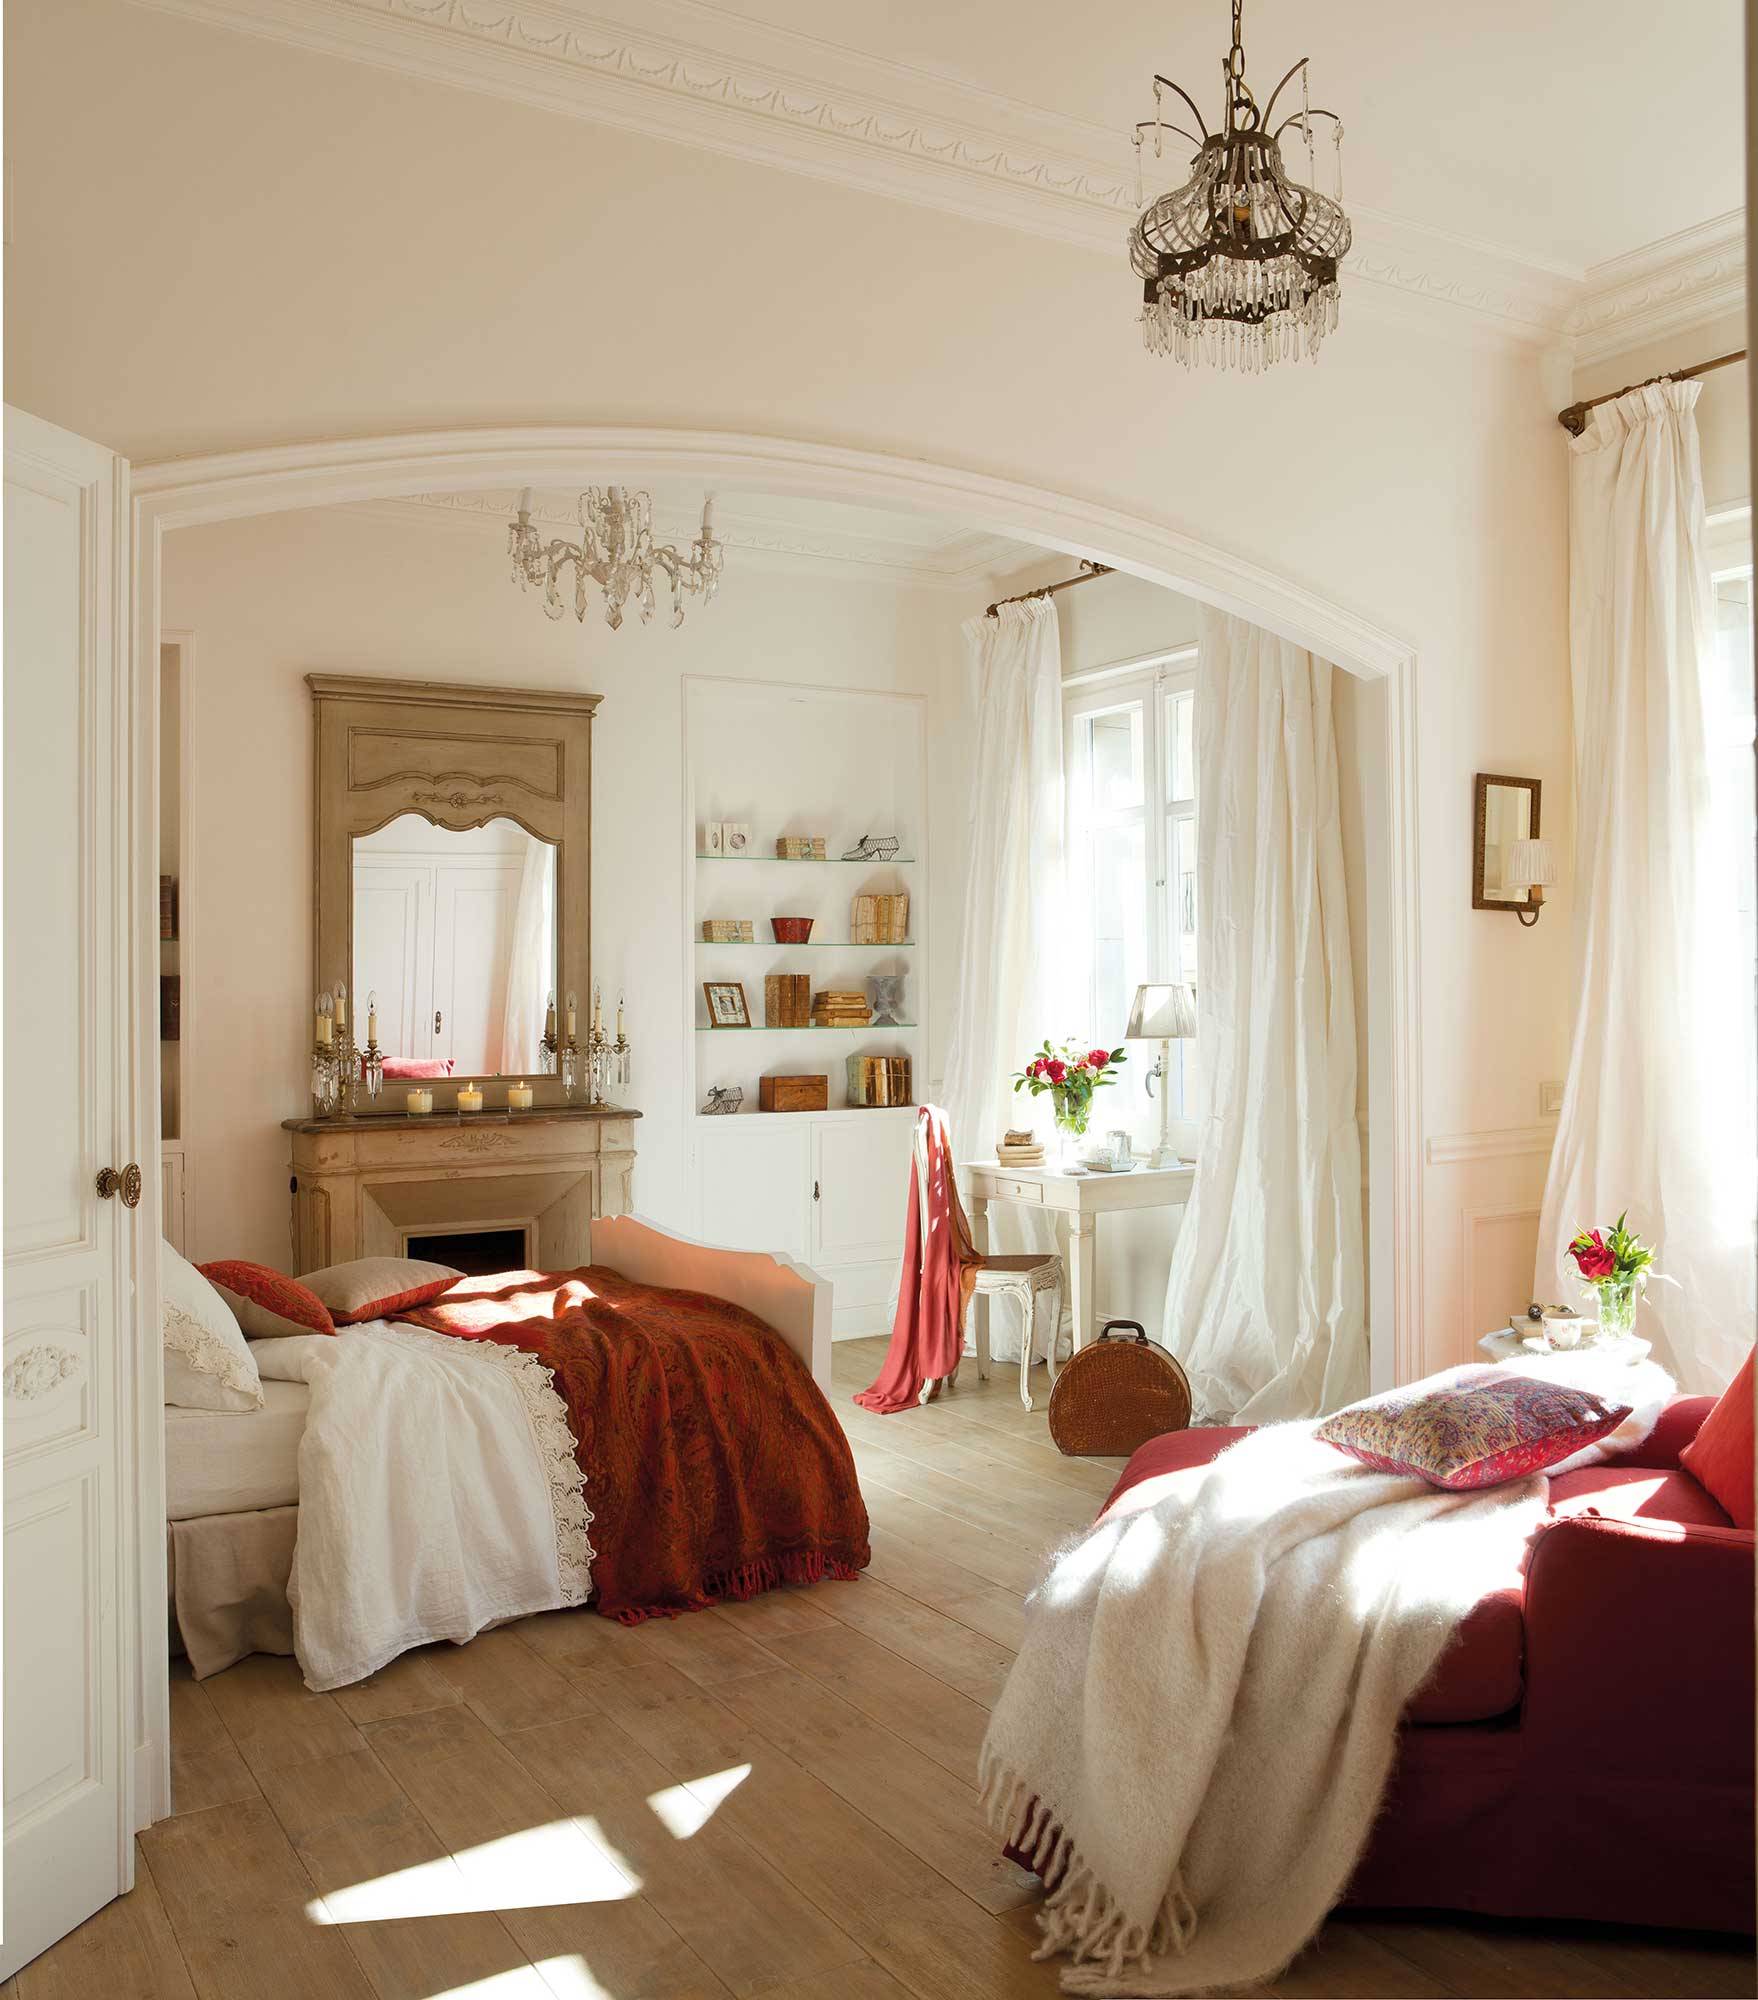 Dormitorio en tonos rojizos.